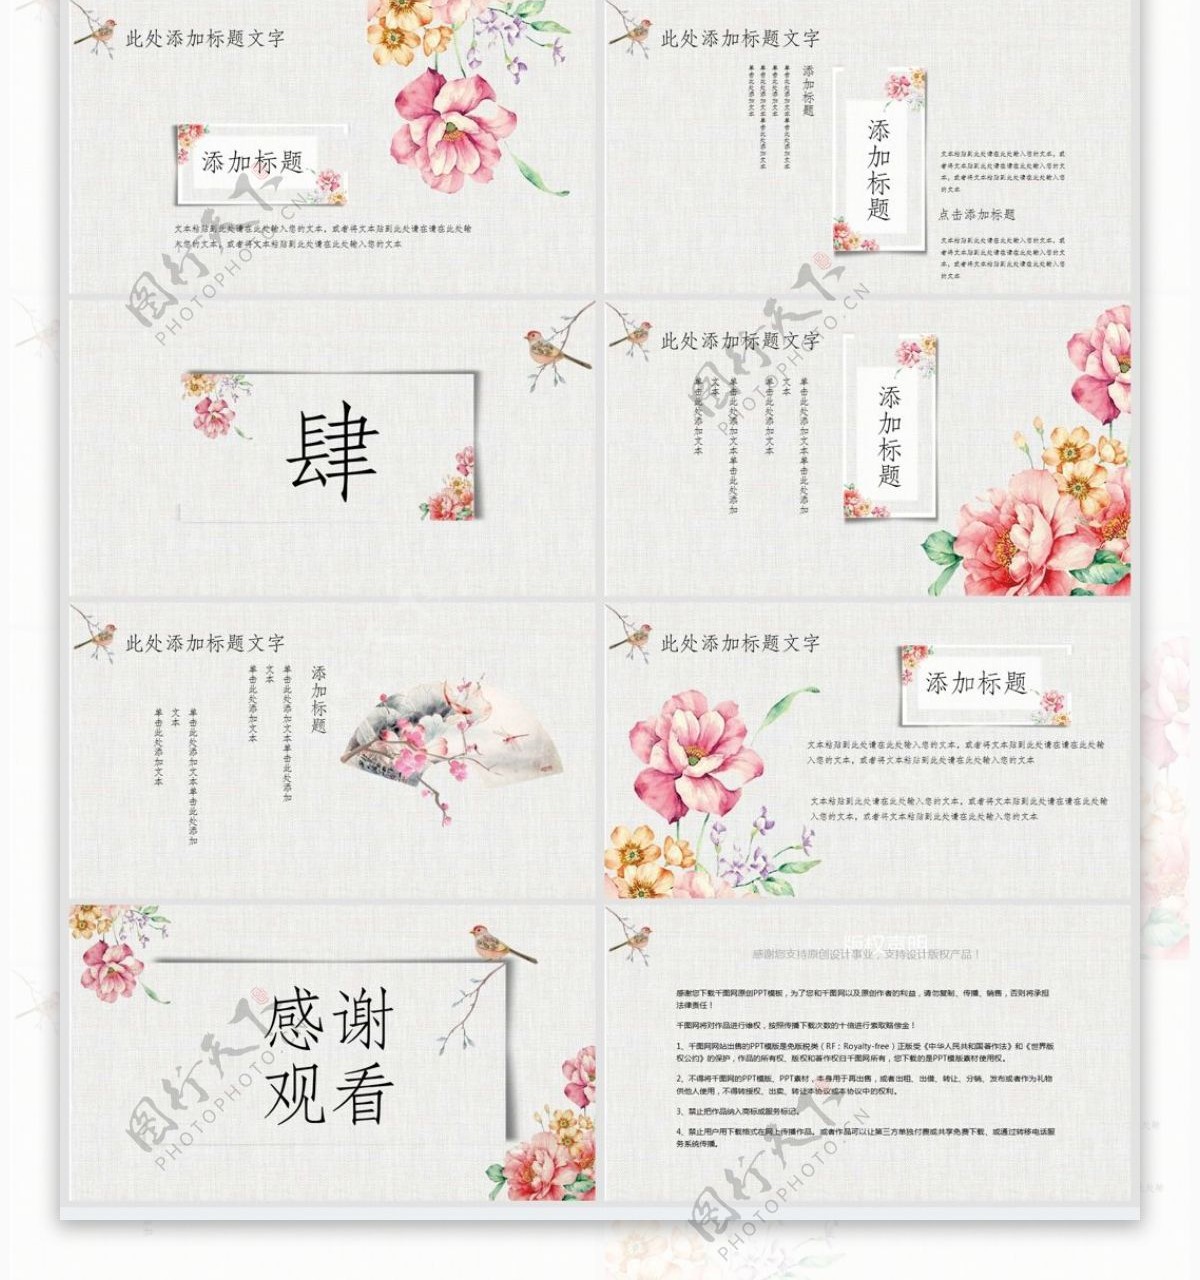 424中国风国学文化宣传PPT模板